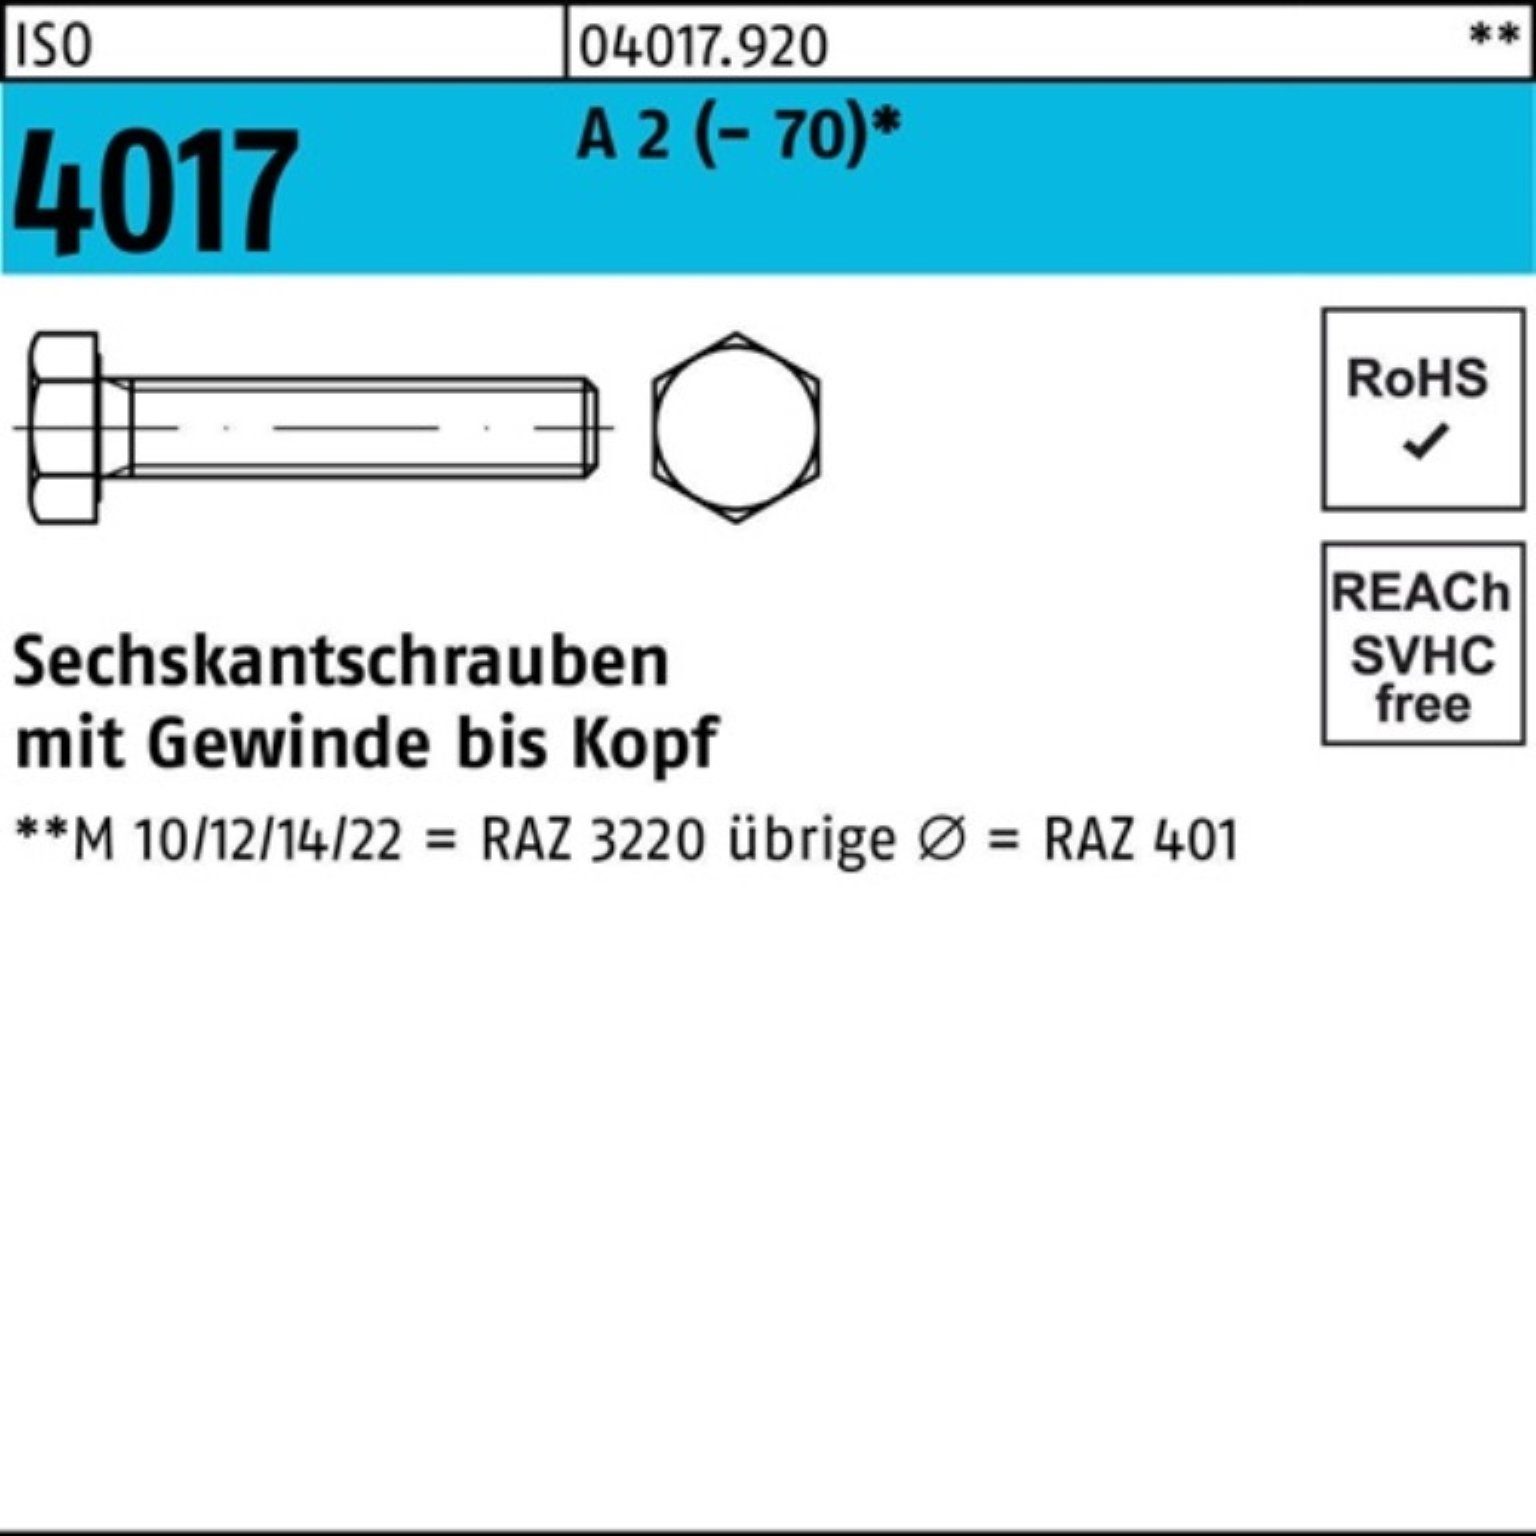 Bufab Sechskantschraube 200er Pack Sechskantschraube ISO 4017 VG M8x 30 A 2 (70) 200 Stück